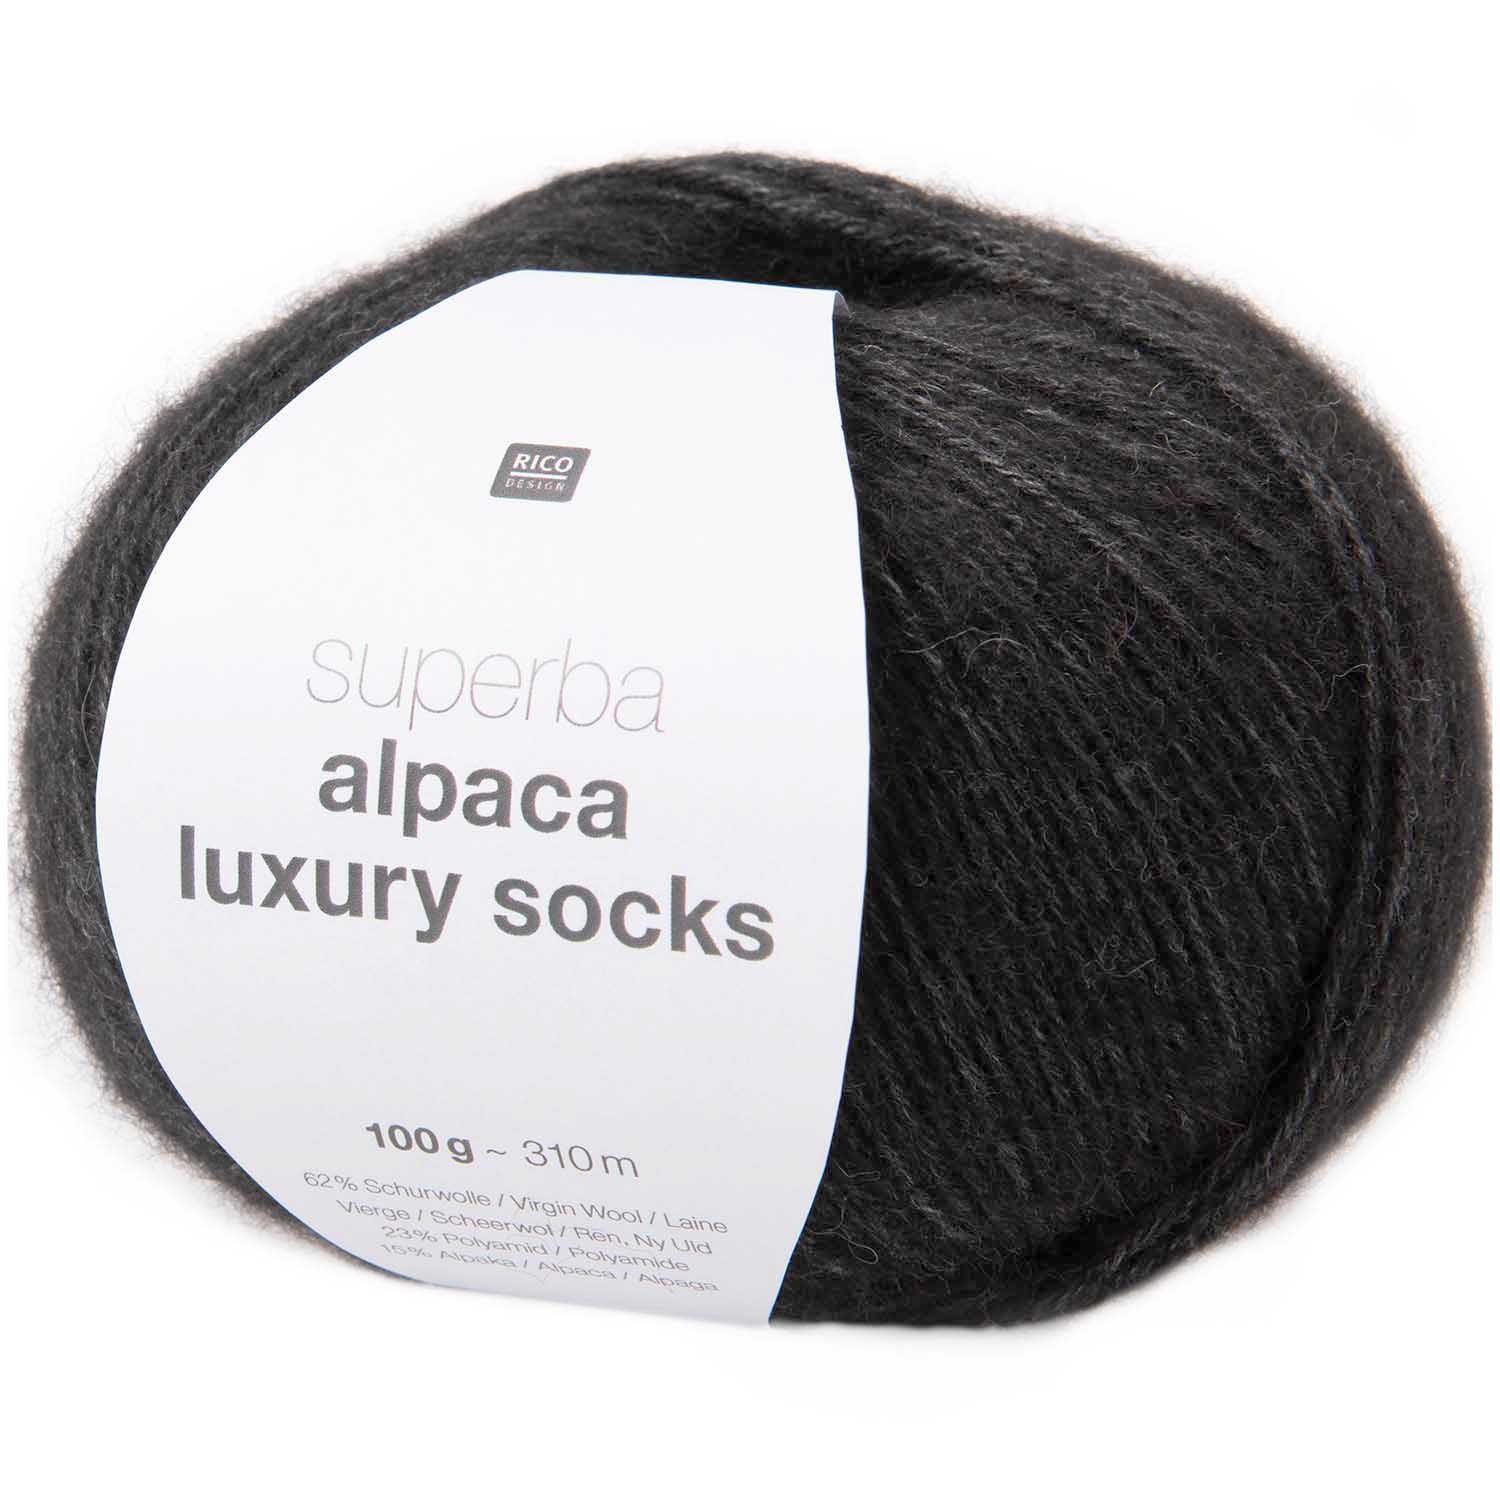 Superba Alpaca Luxury Socks Rico 100g 